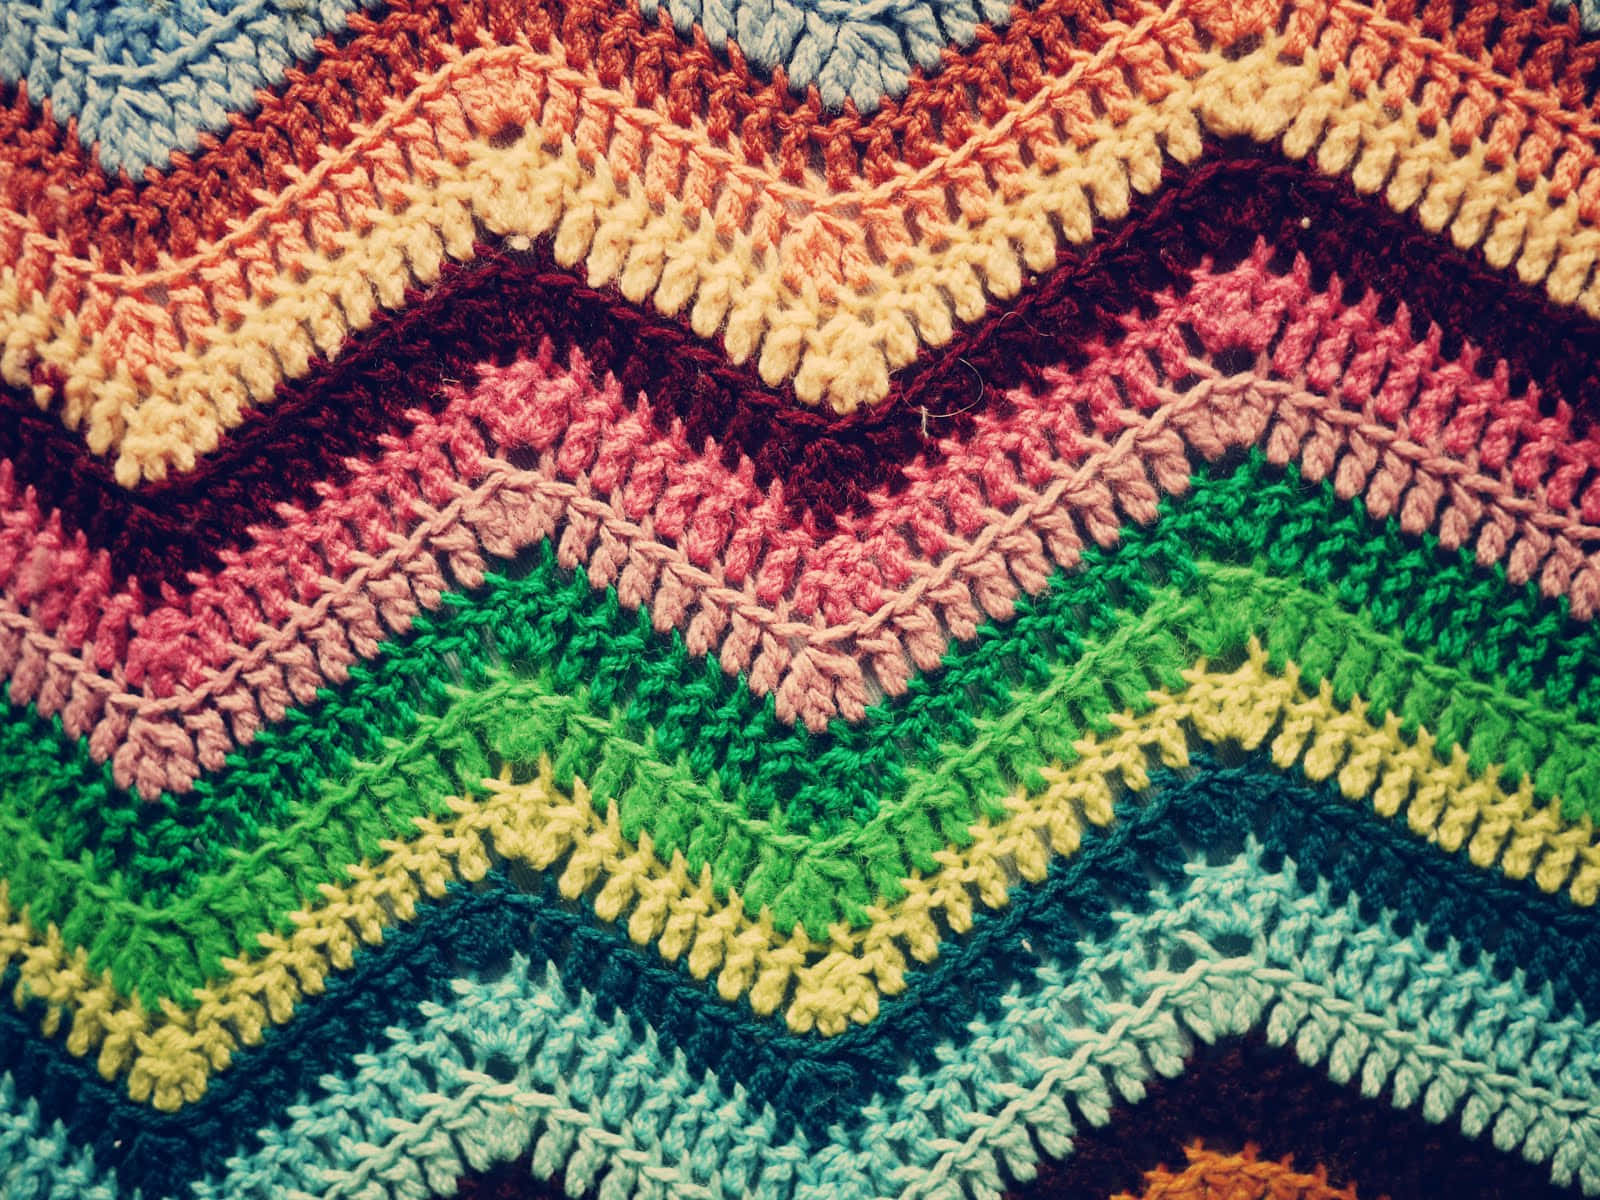 Learn the Art of Crochet